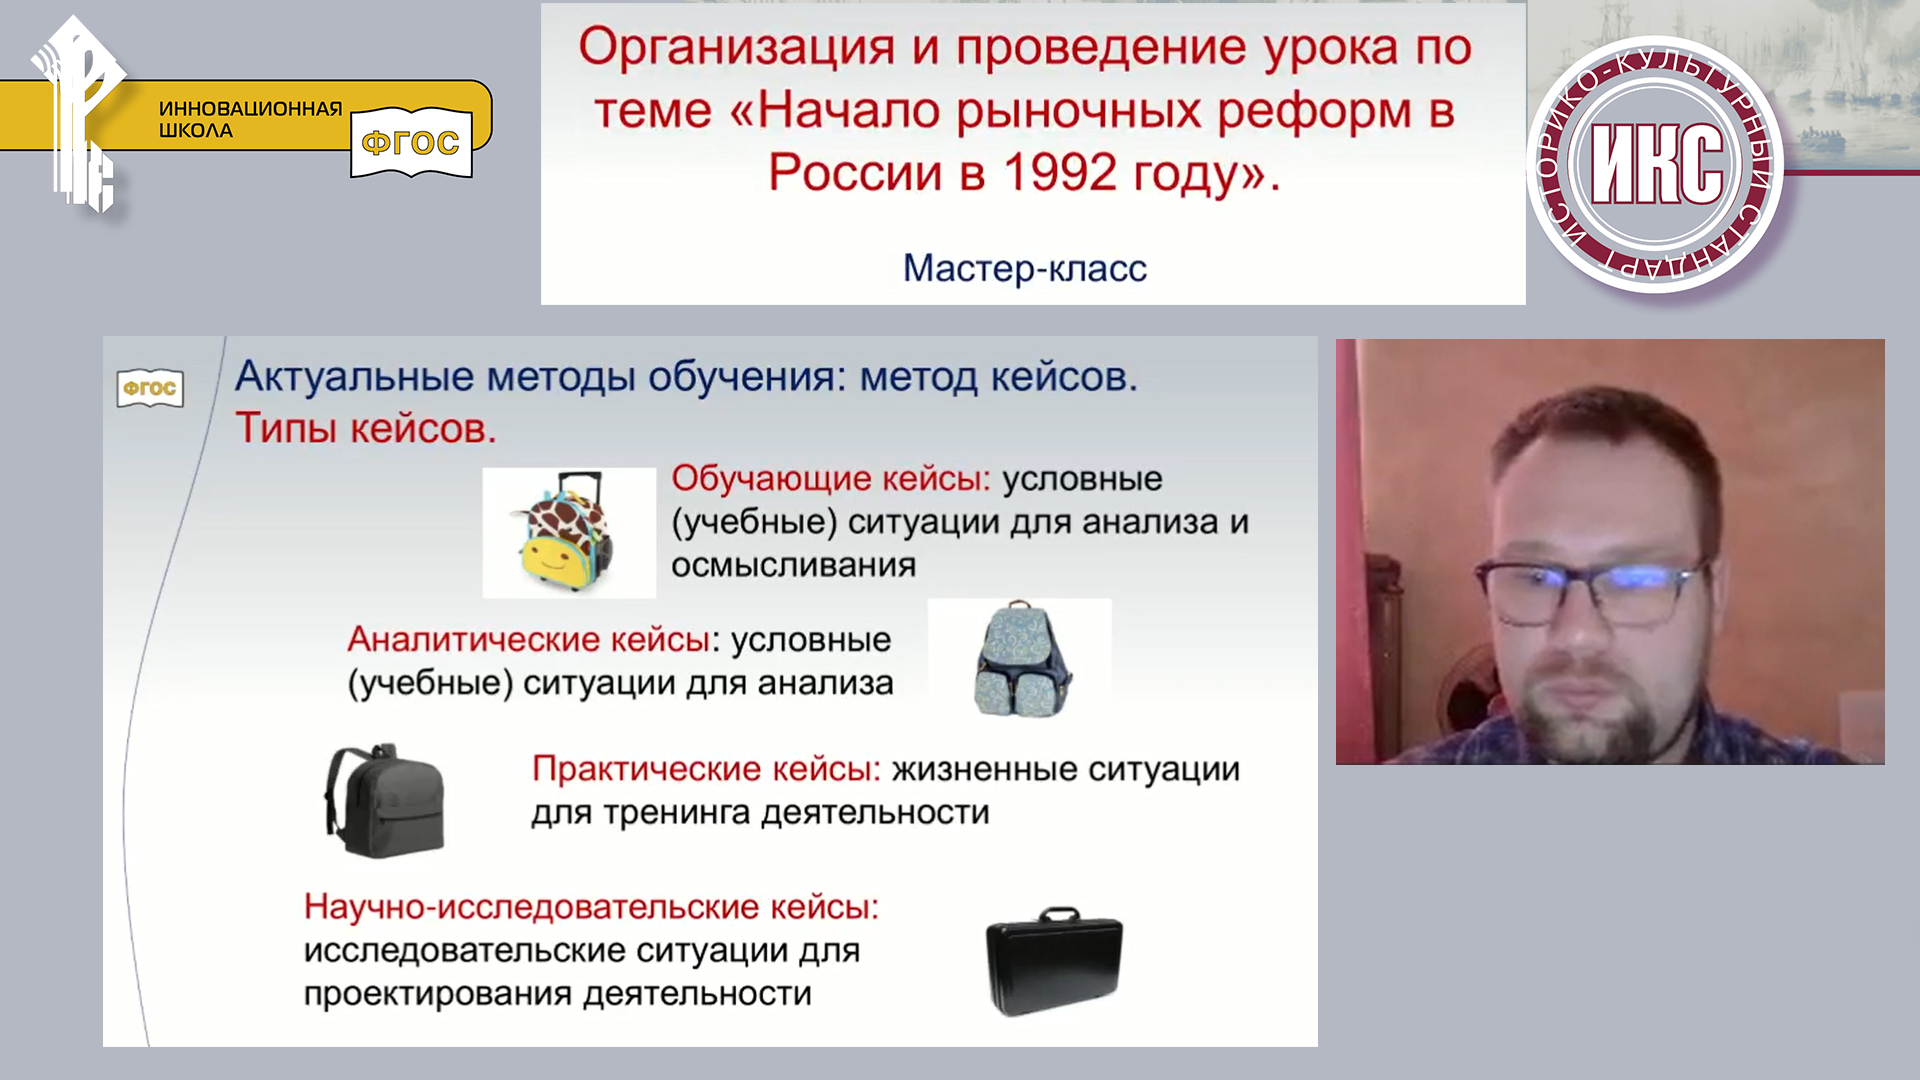 Мастер-класс «Организация и проведение урока по теме «Начало рыночных реформ в России в 1992 году»